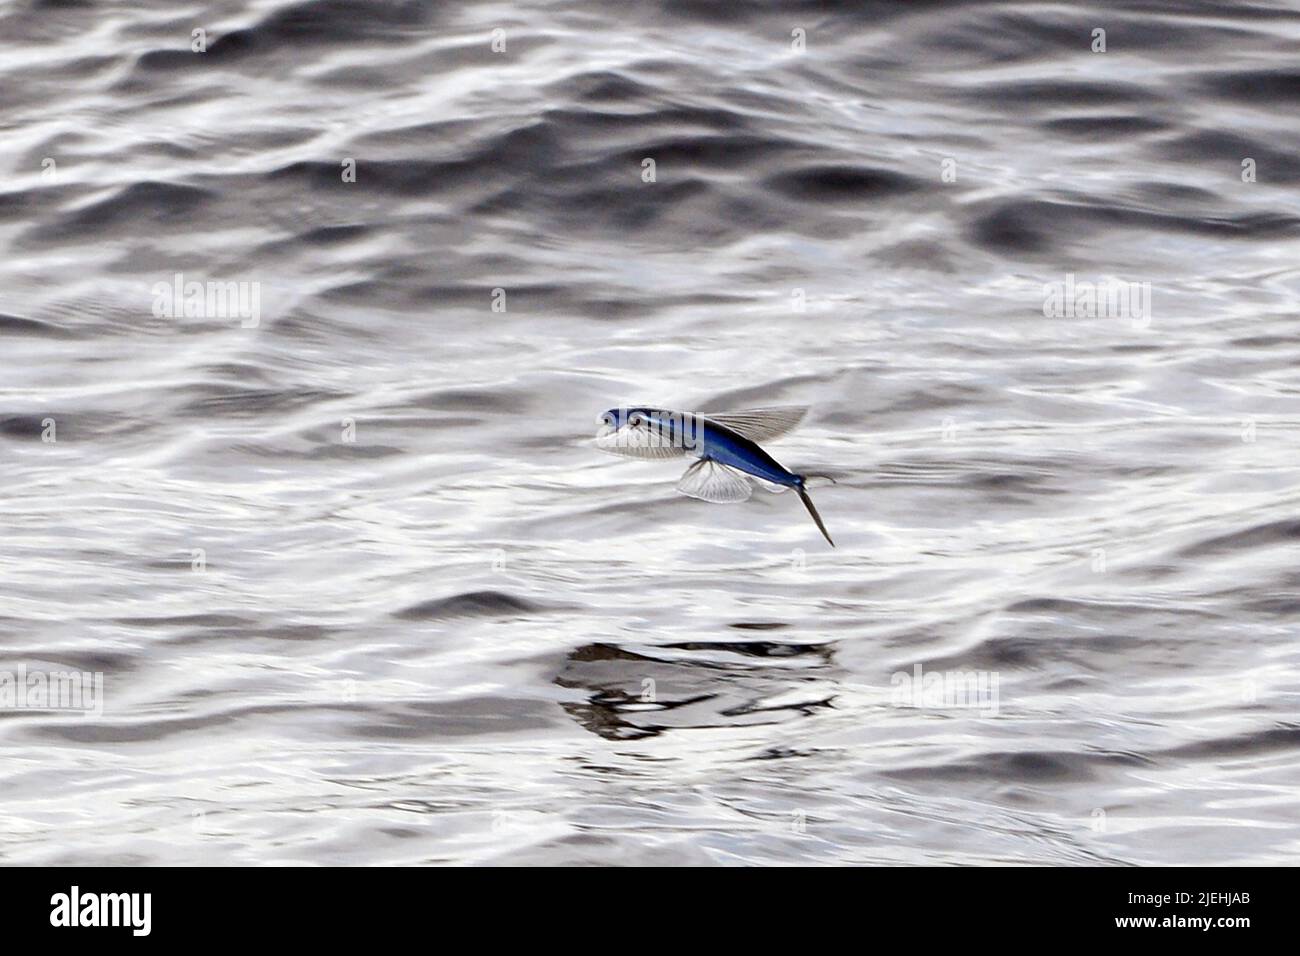 Ein Fliegender Fisch (Cheilopogon melanurus) im Mittelmeer Stock Photo